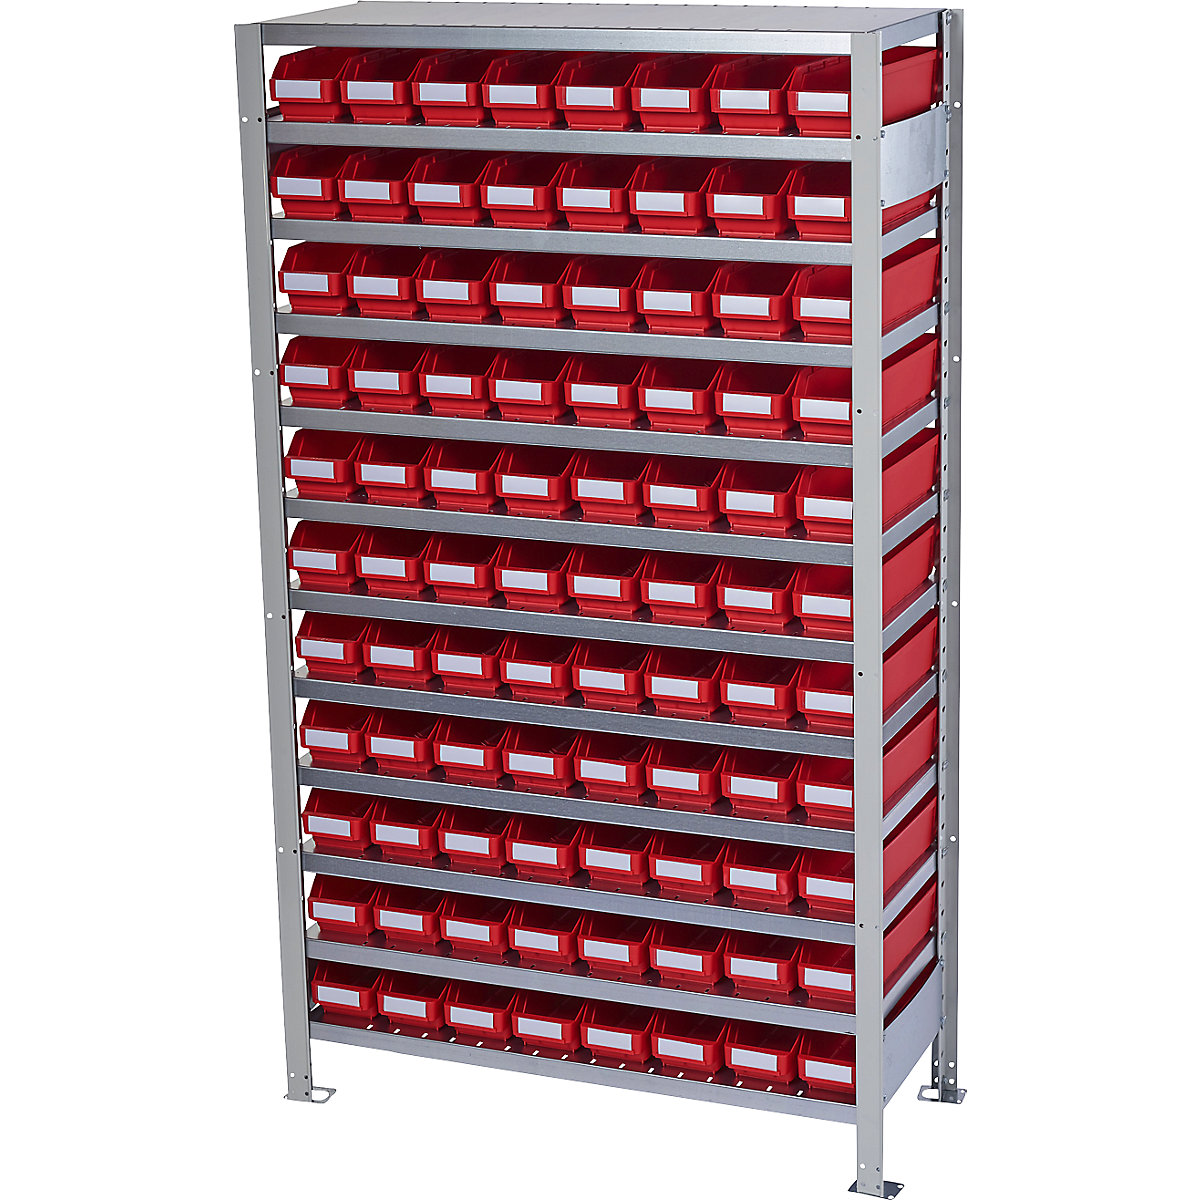 Összedugaszolós állvány dobozokkal – STEMO, állványmagasság 1790 mm, alapállvány, 300 mm mély, 88 piros doboz-24